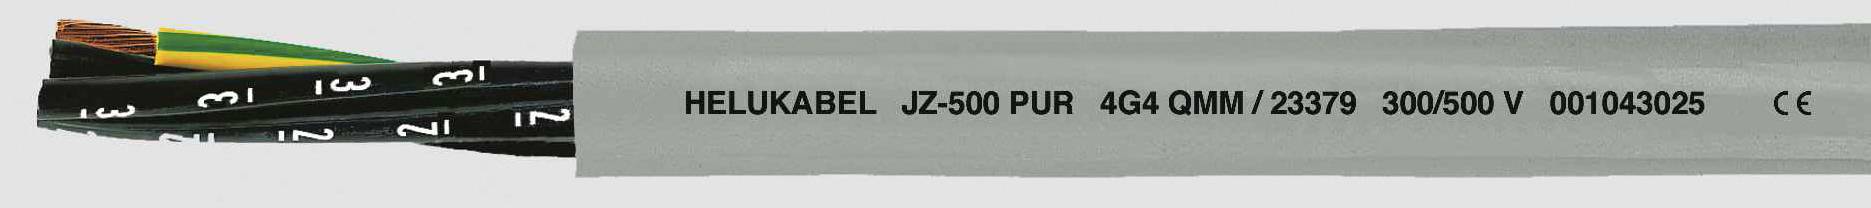 HELUKABEL JZ-500 PUR Steuerleitung 4 G 2.50 mm² Grau 23375 100 m